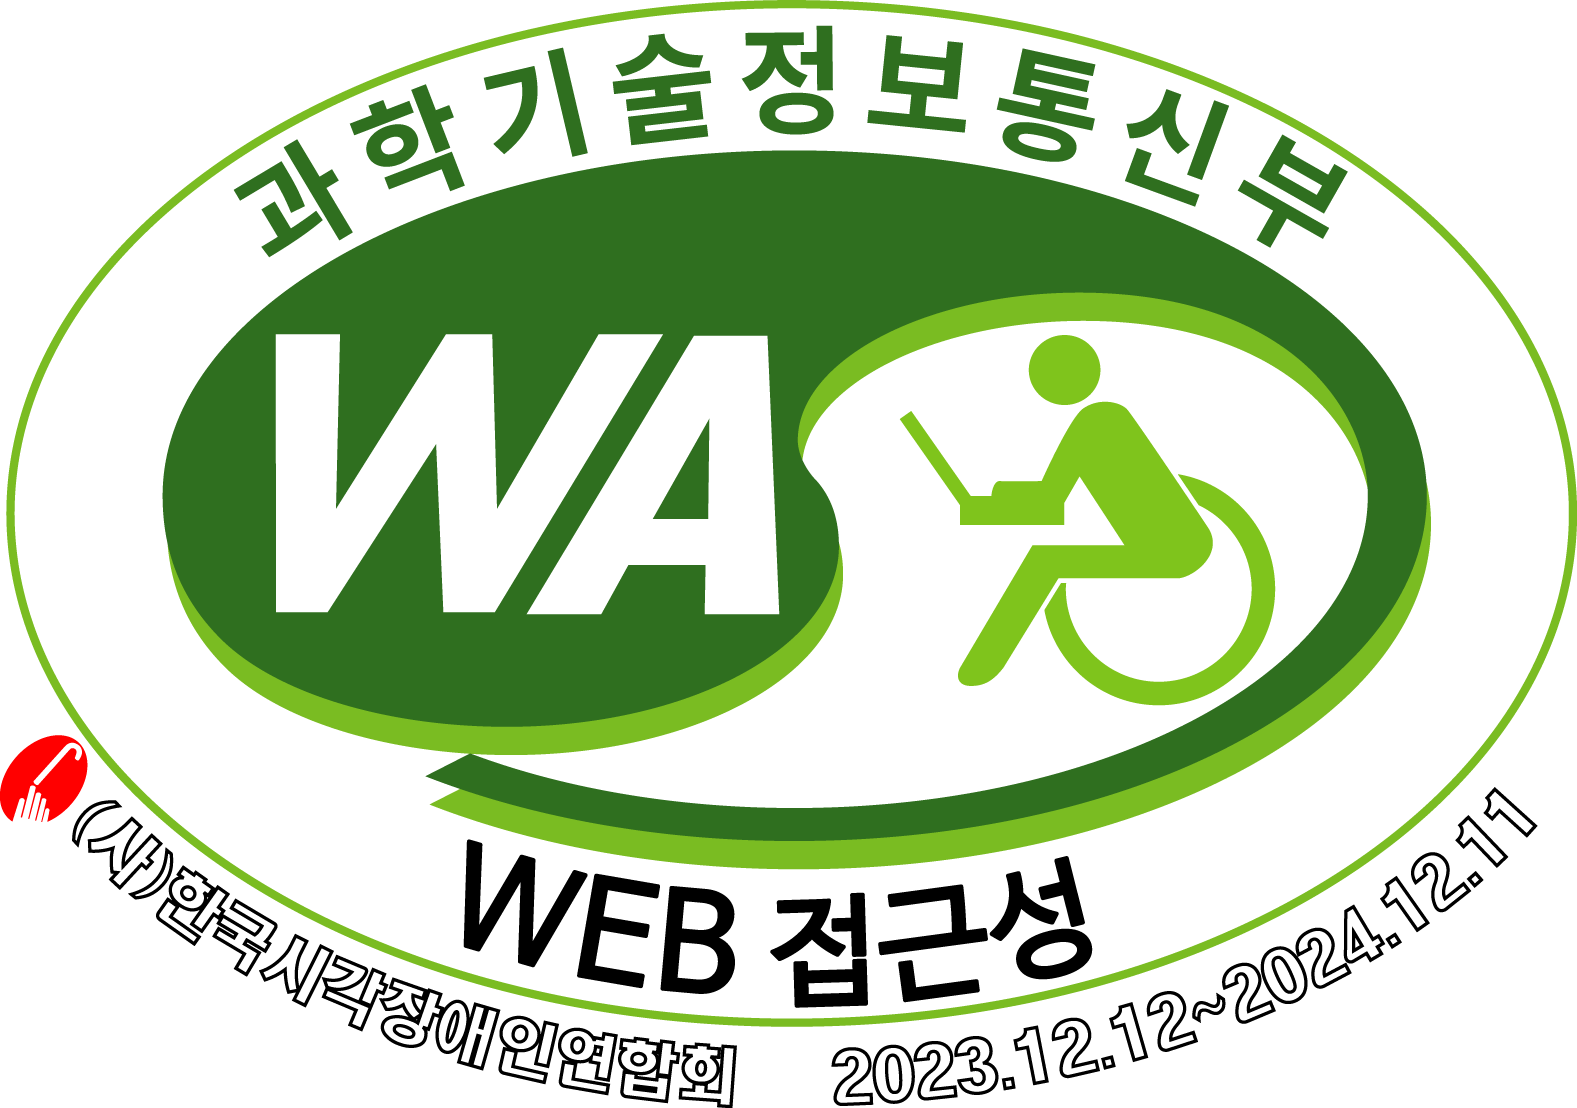 한국웹접근성 평가센터 WA품질인증마크